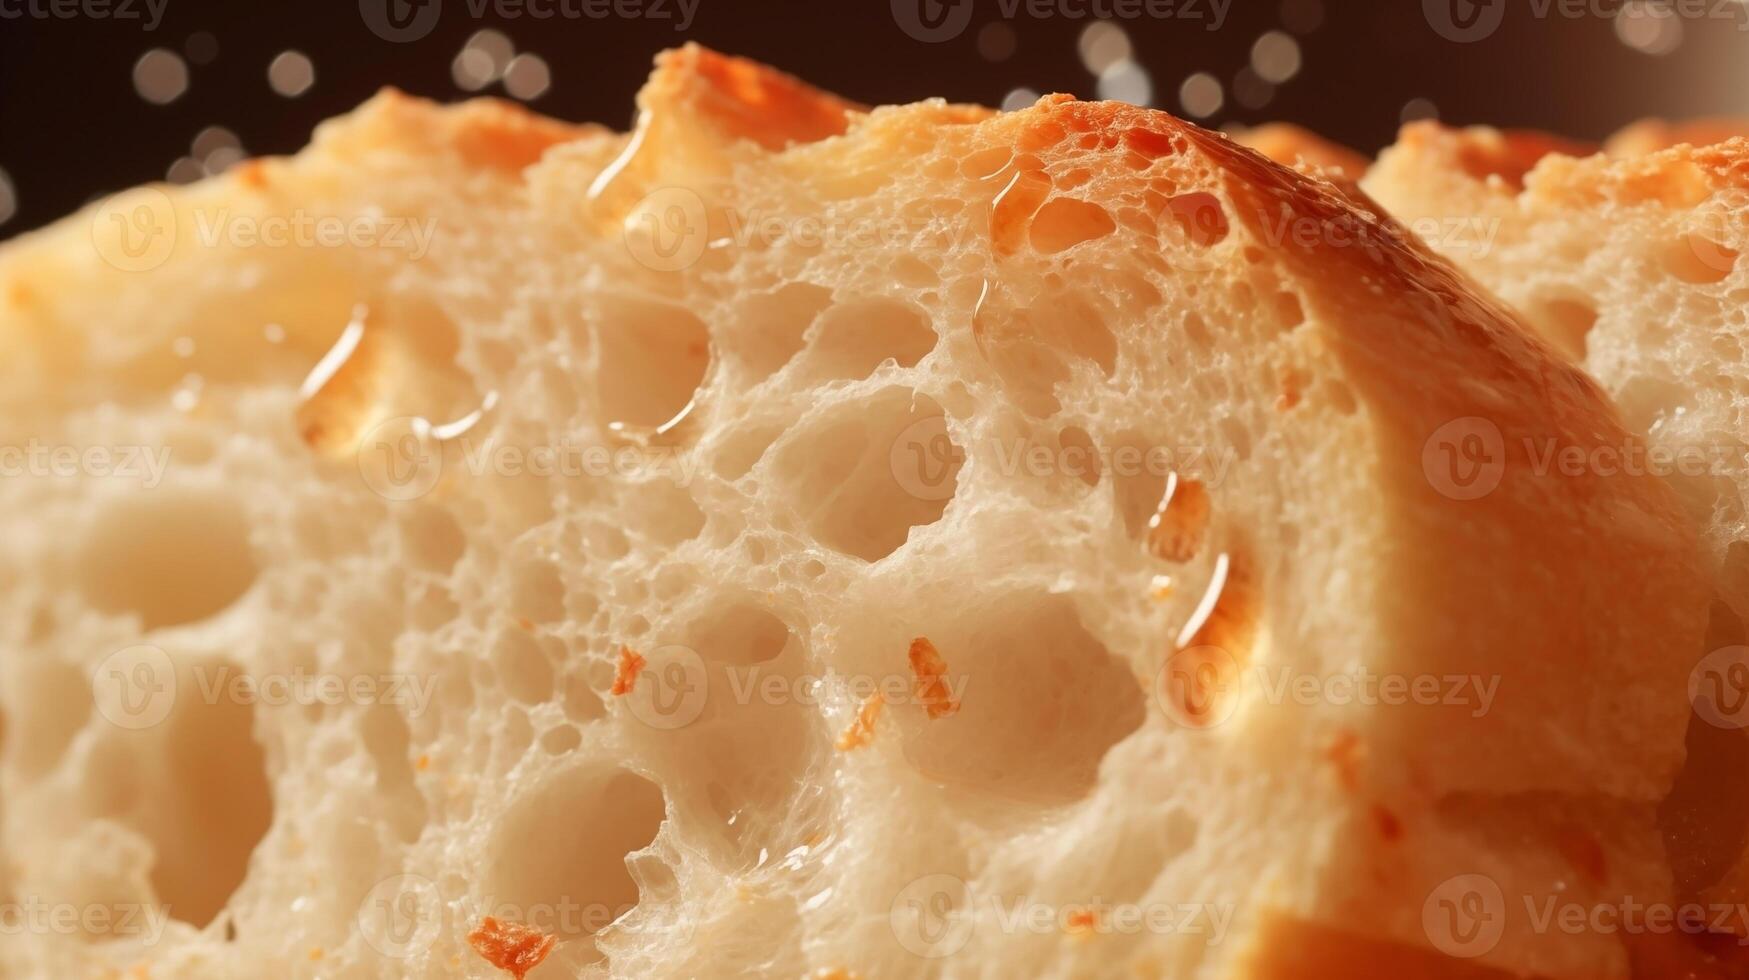 extreem detailopname van smakelijk brood. voedsel fotografie foto